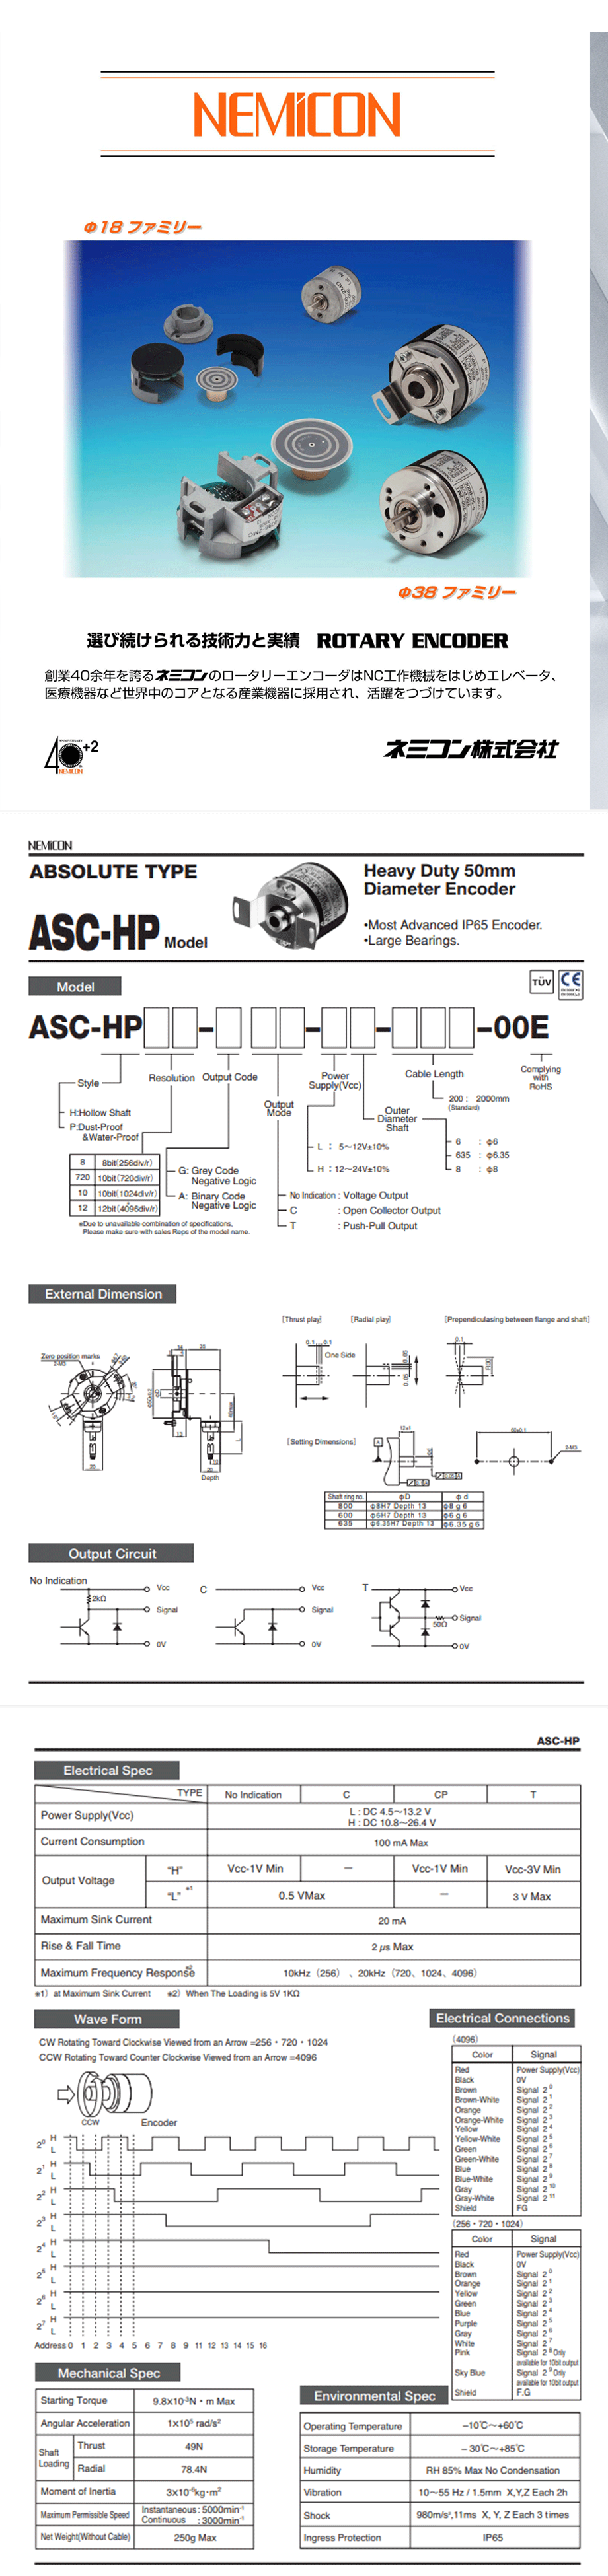 ASC-HP系列详情页-1.png